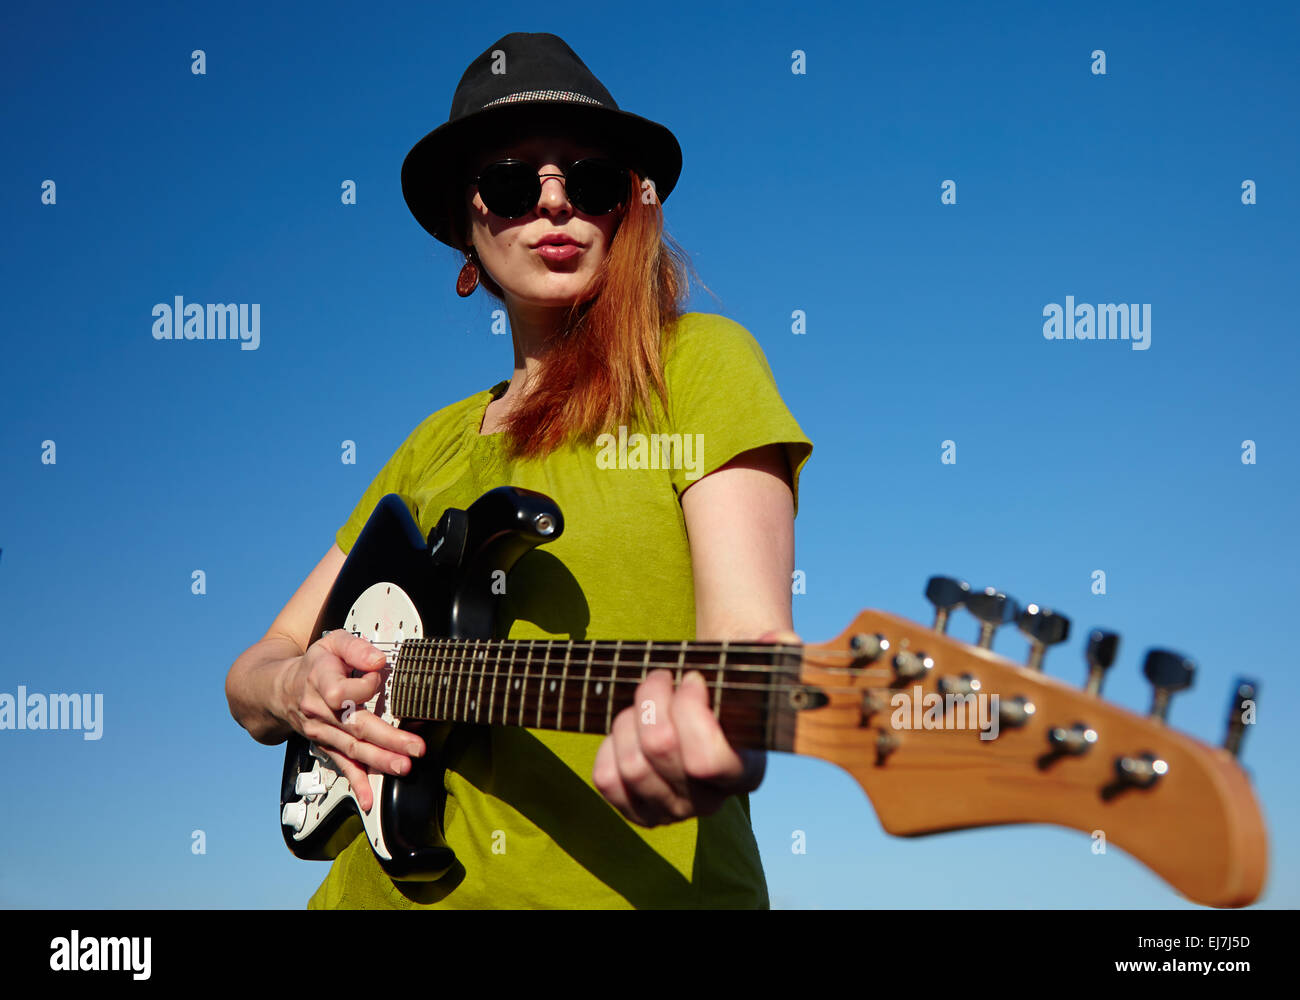 Weibliche Busker mit Gitarre stilvolle Musikerin mit roten Haaren Träger in schwarzen Hut und grünes Hemd spielt auf der Gitarre. Stockfoto